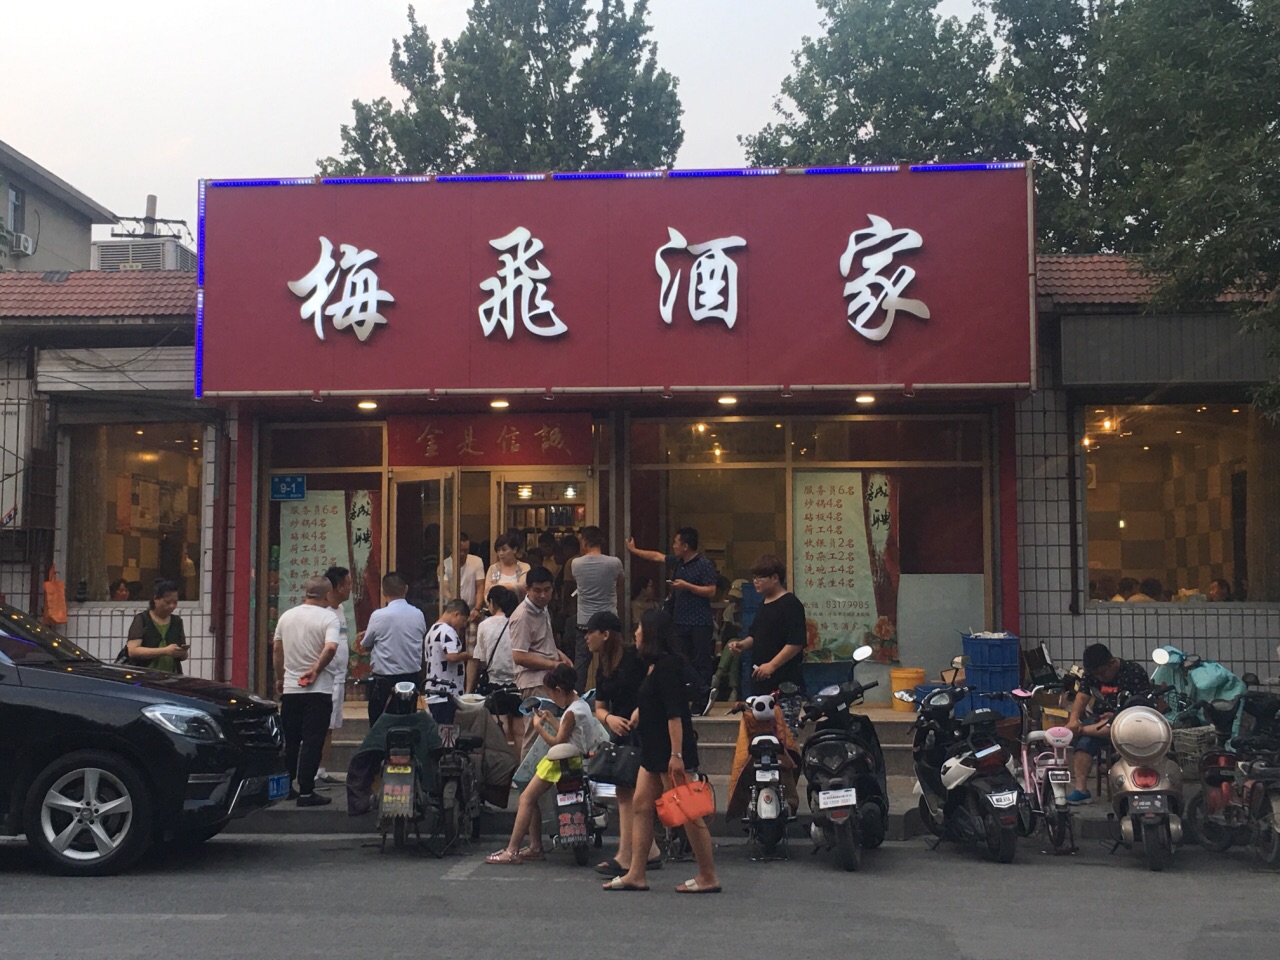 2019梅飞酒家美食餐厅,关键字:黄豆排骨 鸭蛋黄狮子.